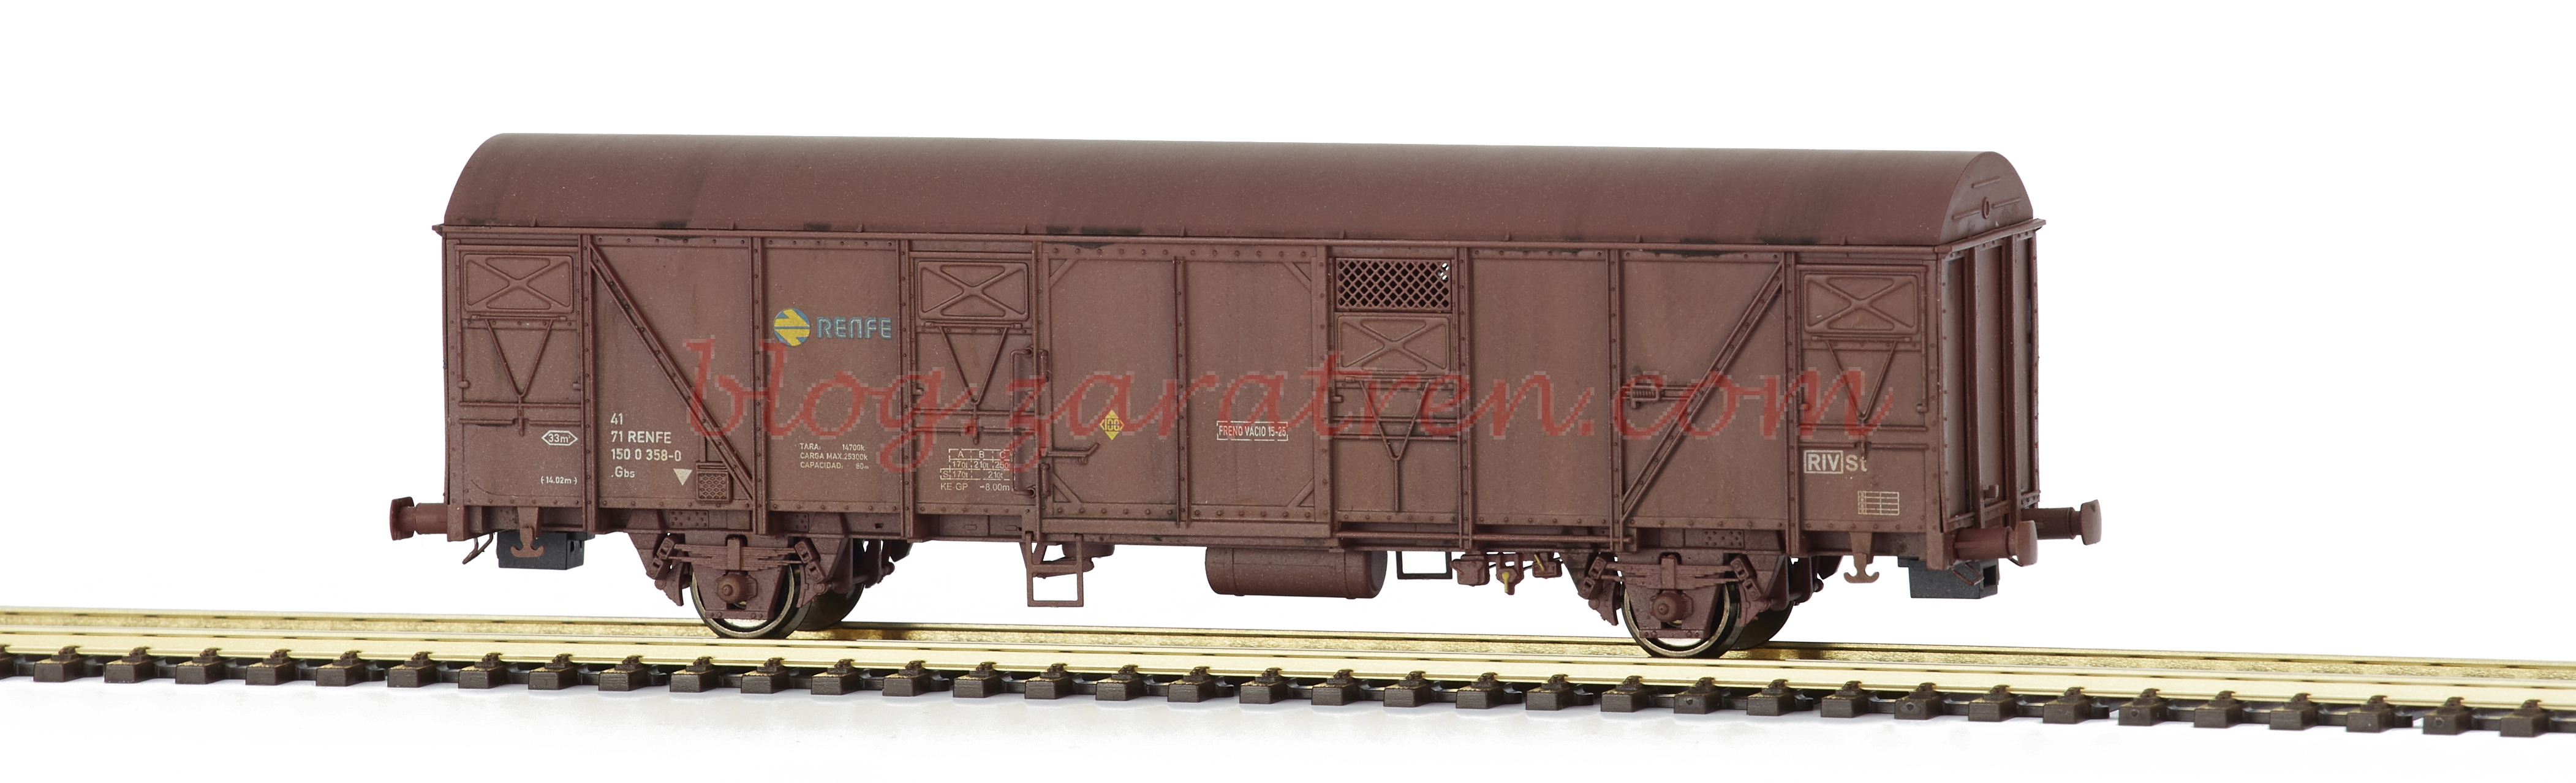 Mabar – Vagón RENFE, Modelo envejecido, Gbs 1500358-0, Escala H0, Ref: 81822.